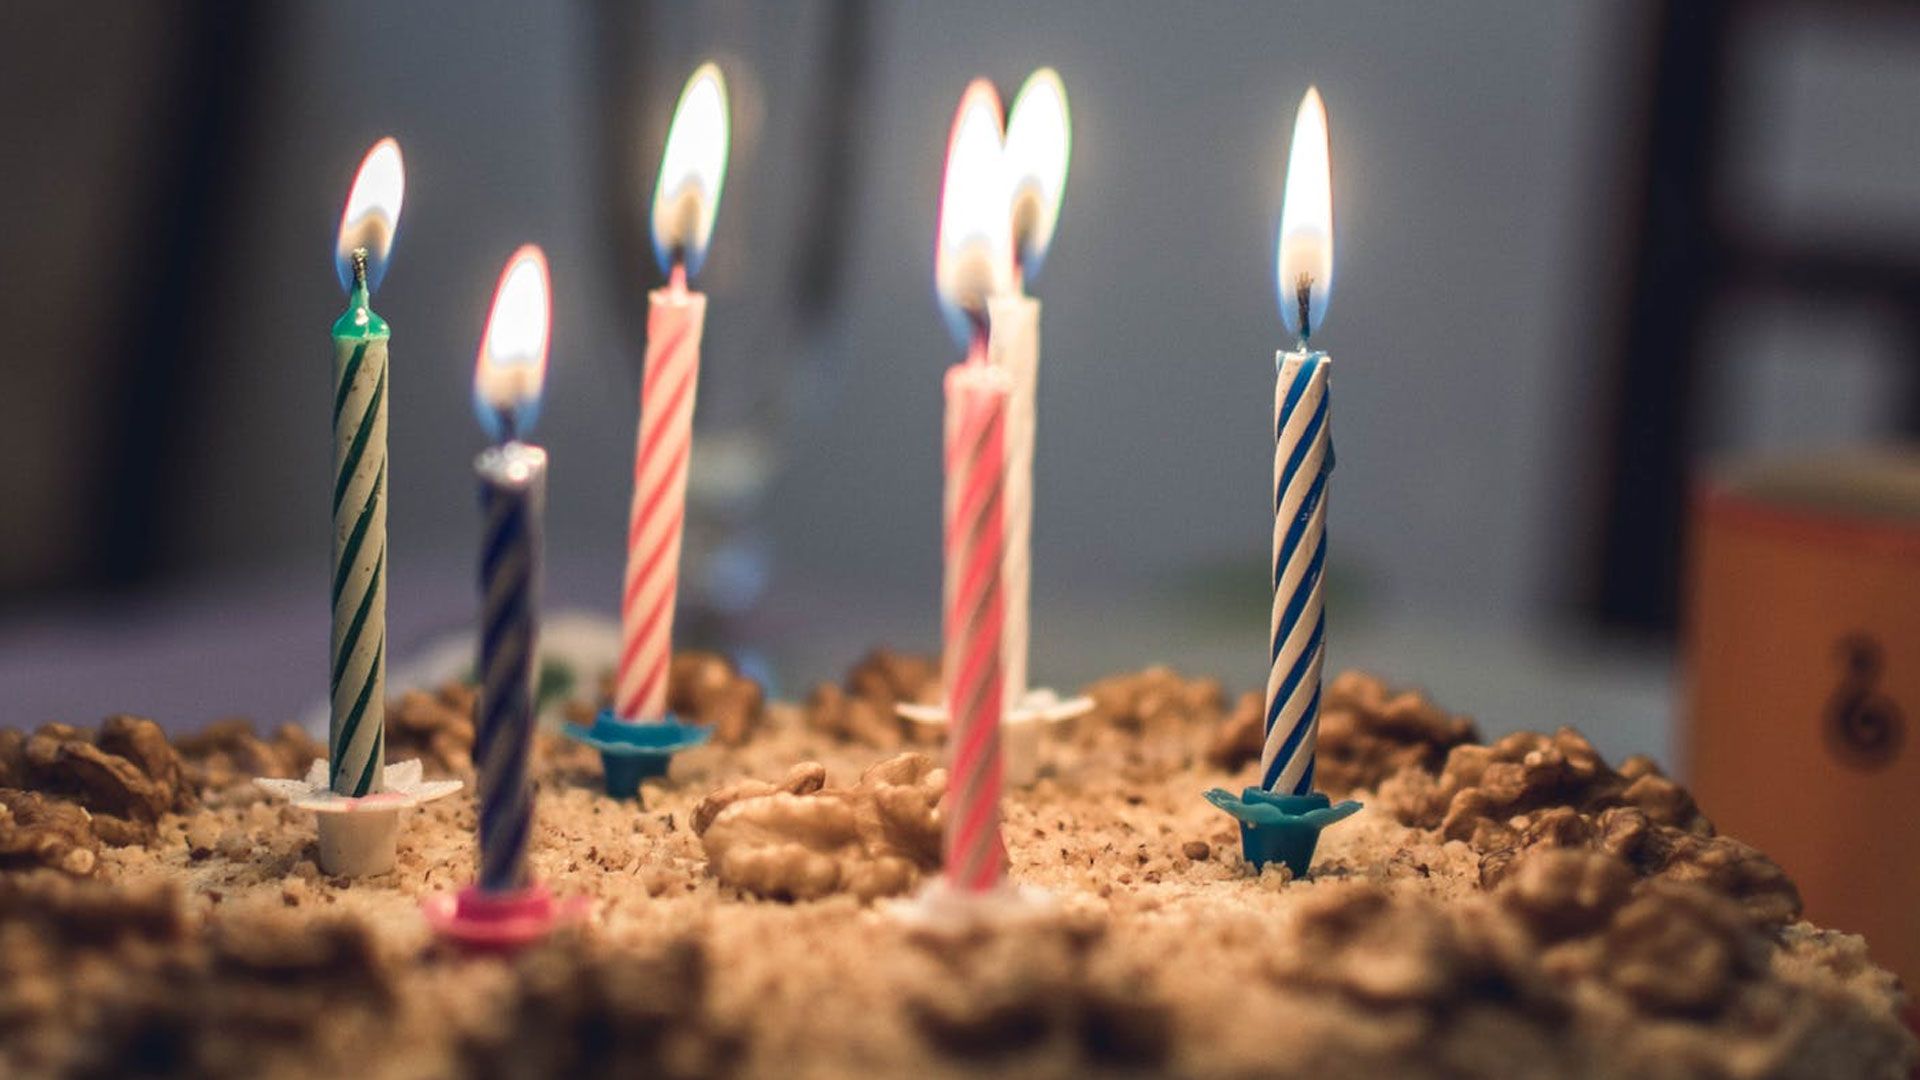 Starcresc Birthday Cake Celebrates 10 Year Anniversary!